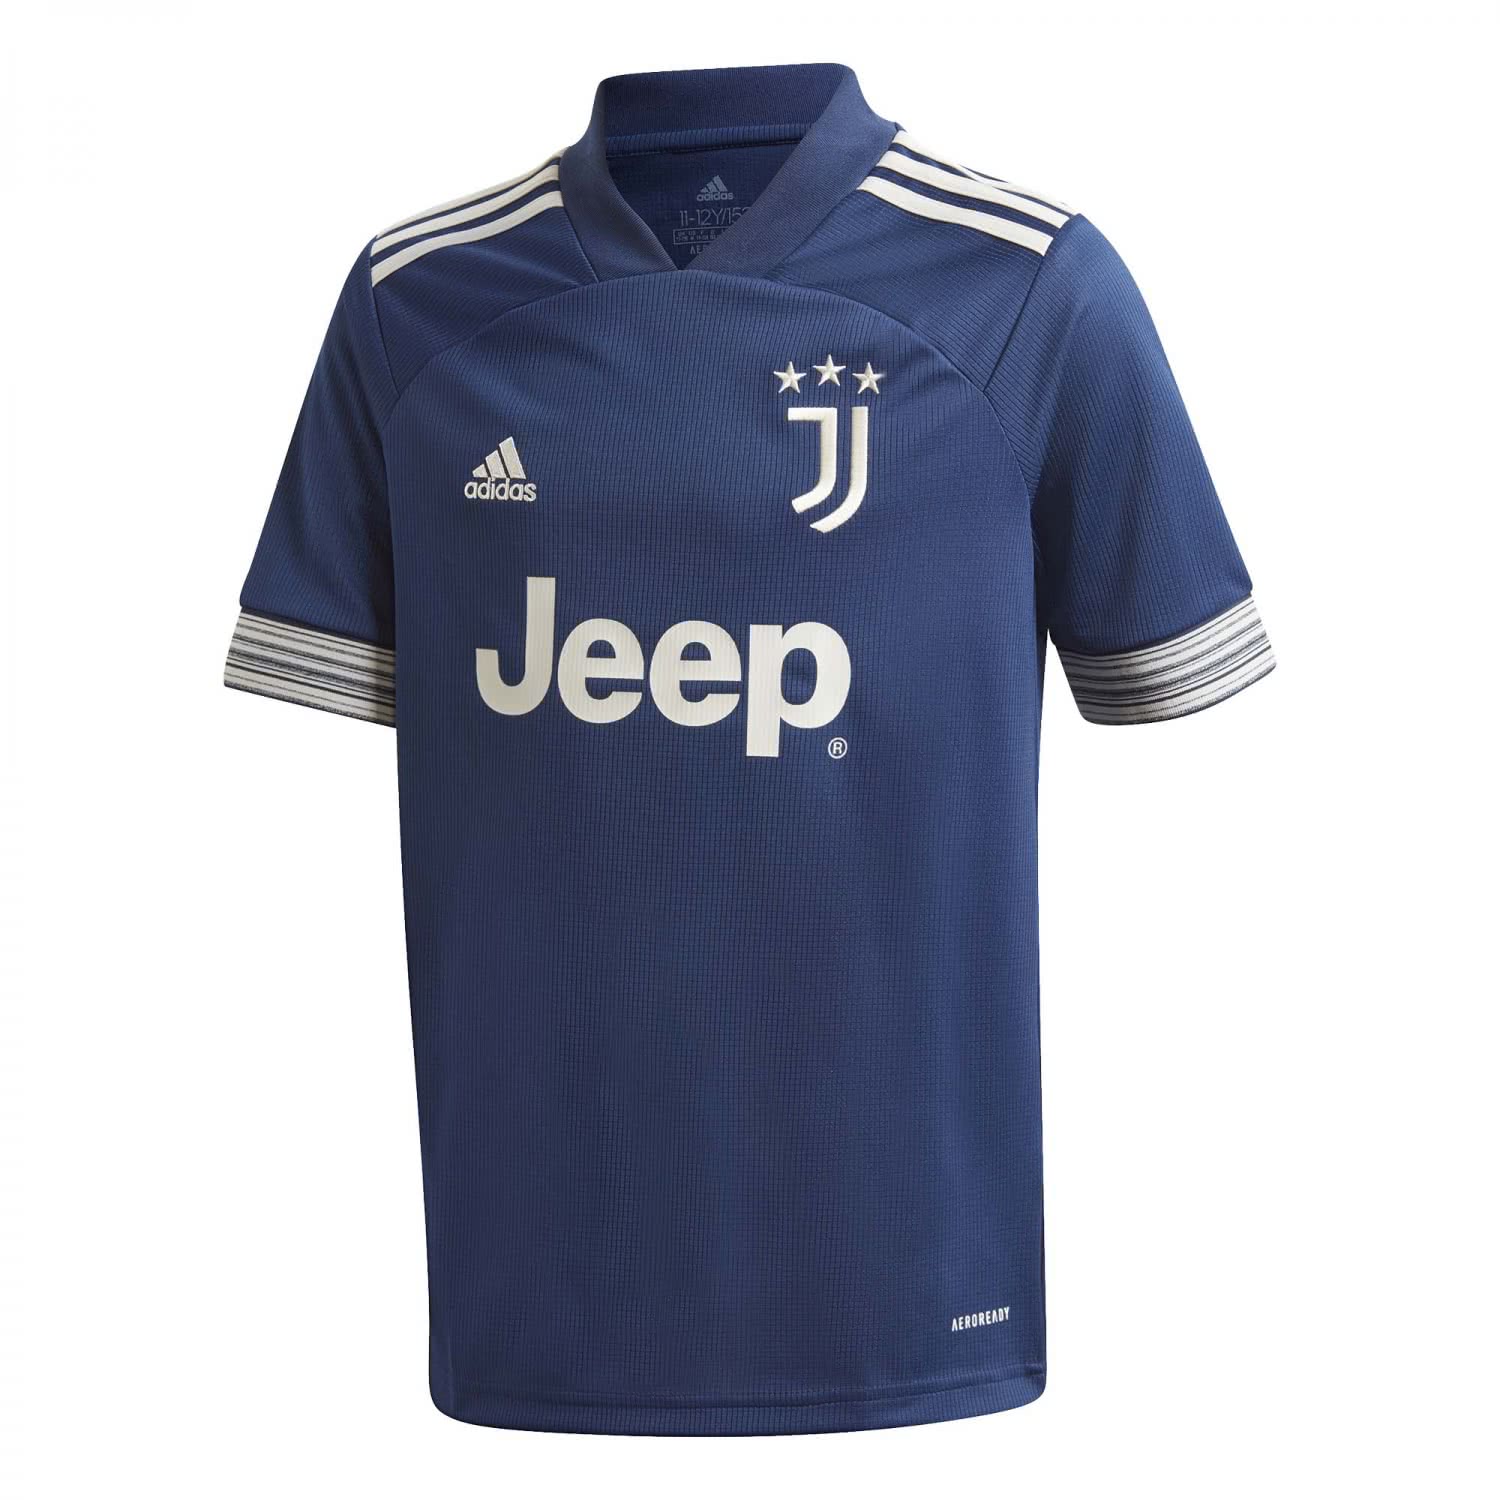 Adidas Kinder Juventus Turin Away Trikot 2020 21 Cortexpower De